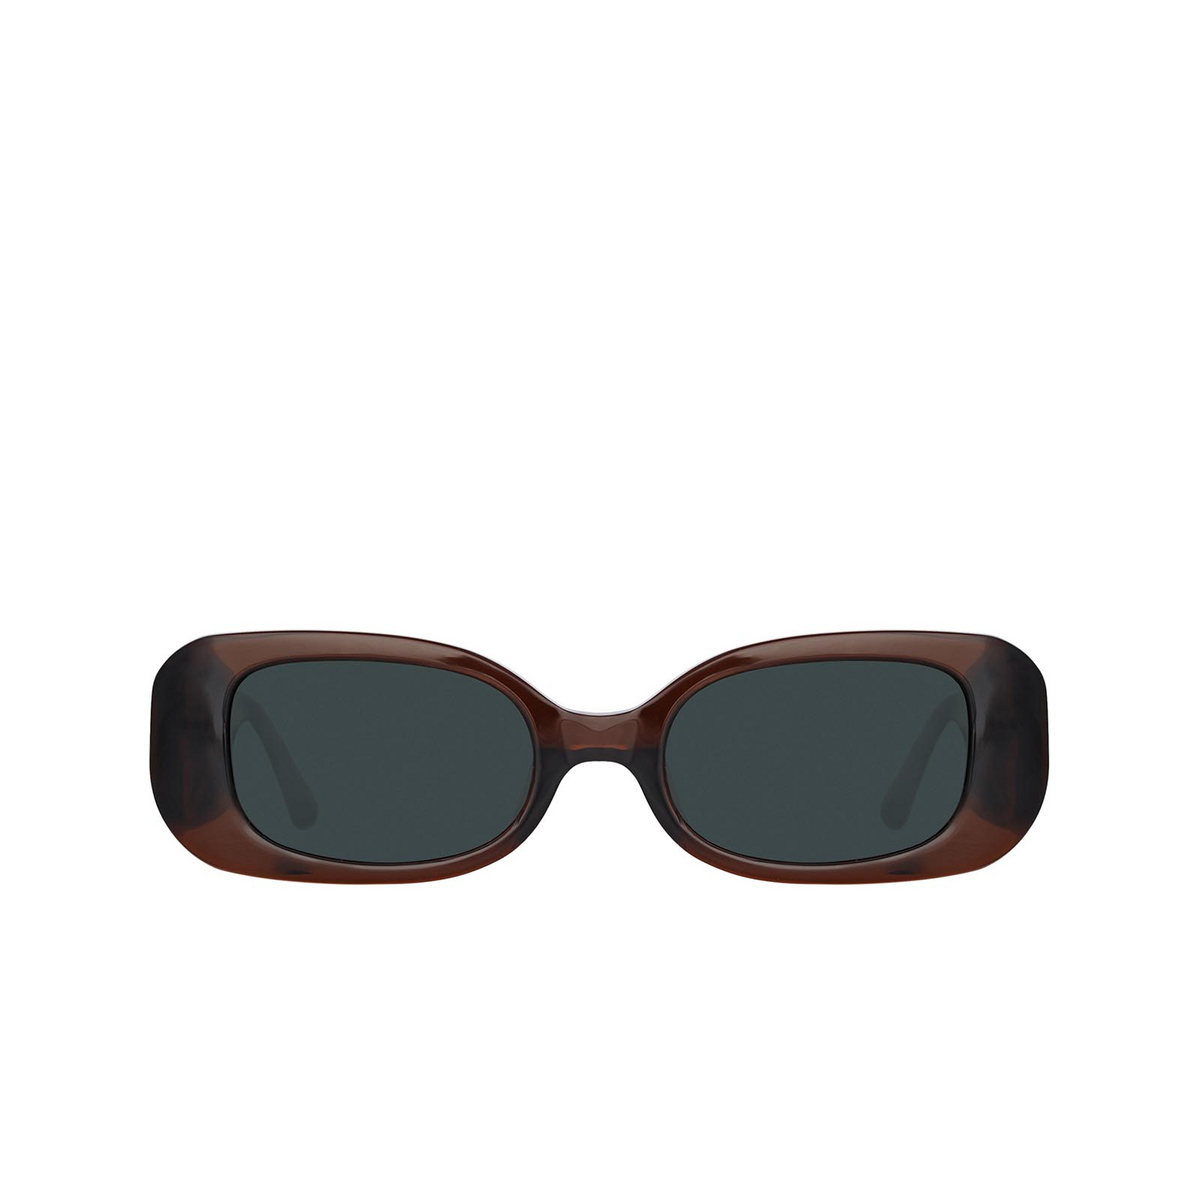 Linda Farrow LOLA Sunglasses 8 Dark Brown / Light Brown - front view